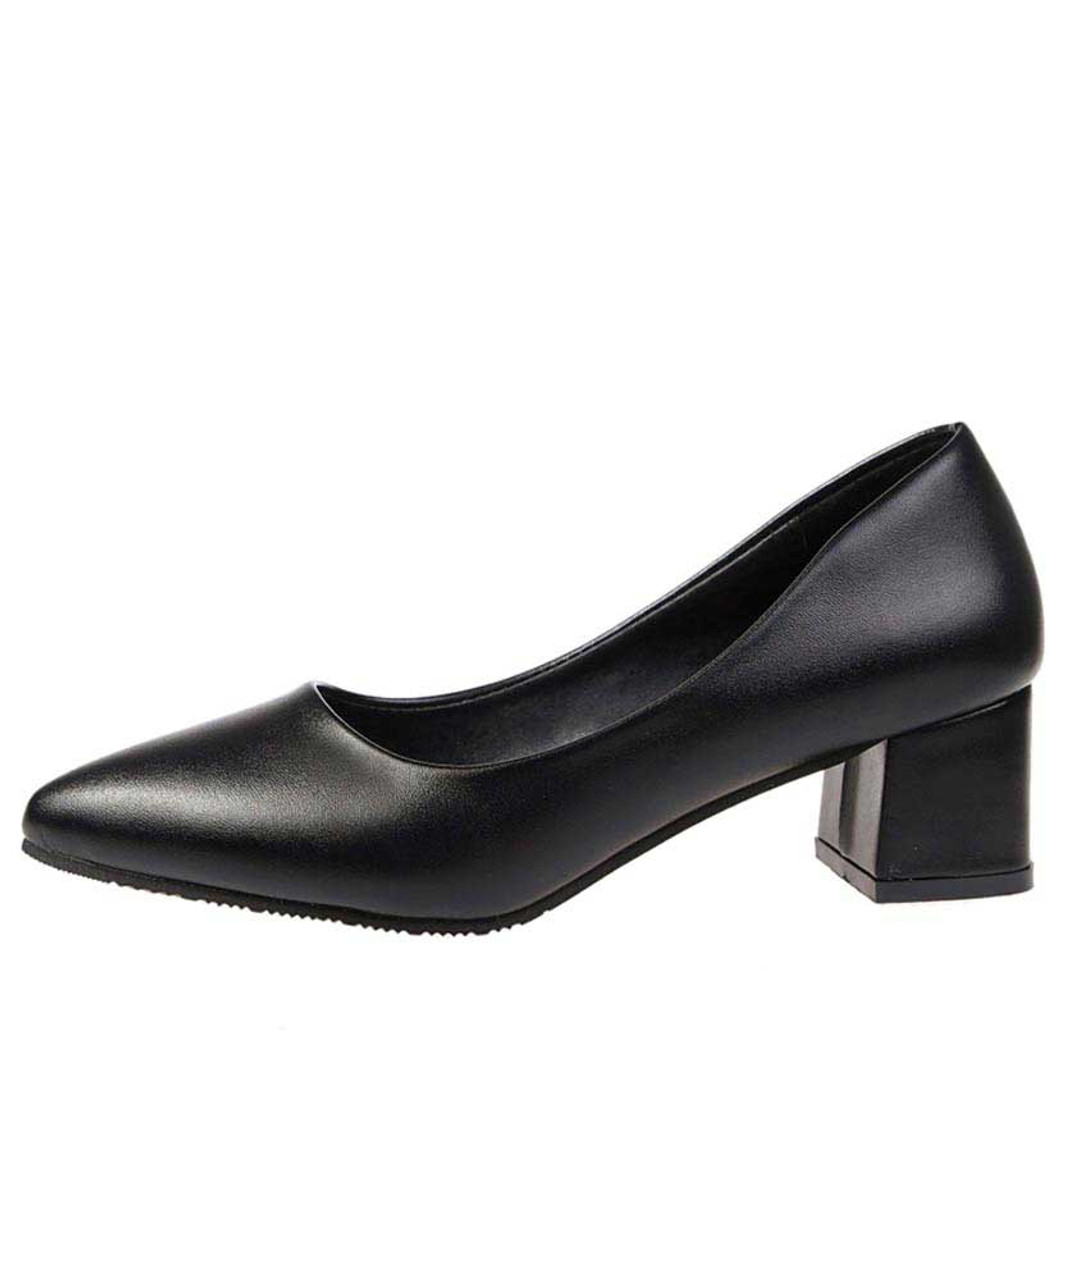 ladies dress black shoes